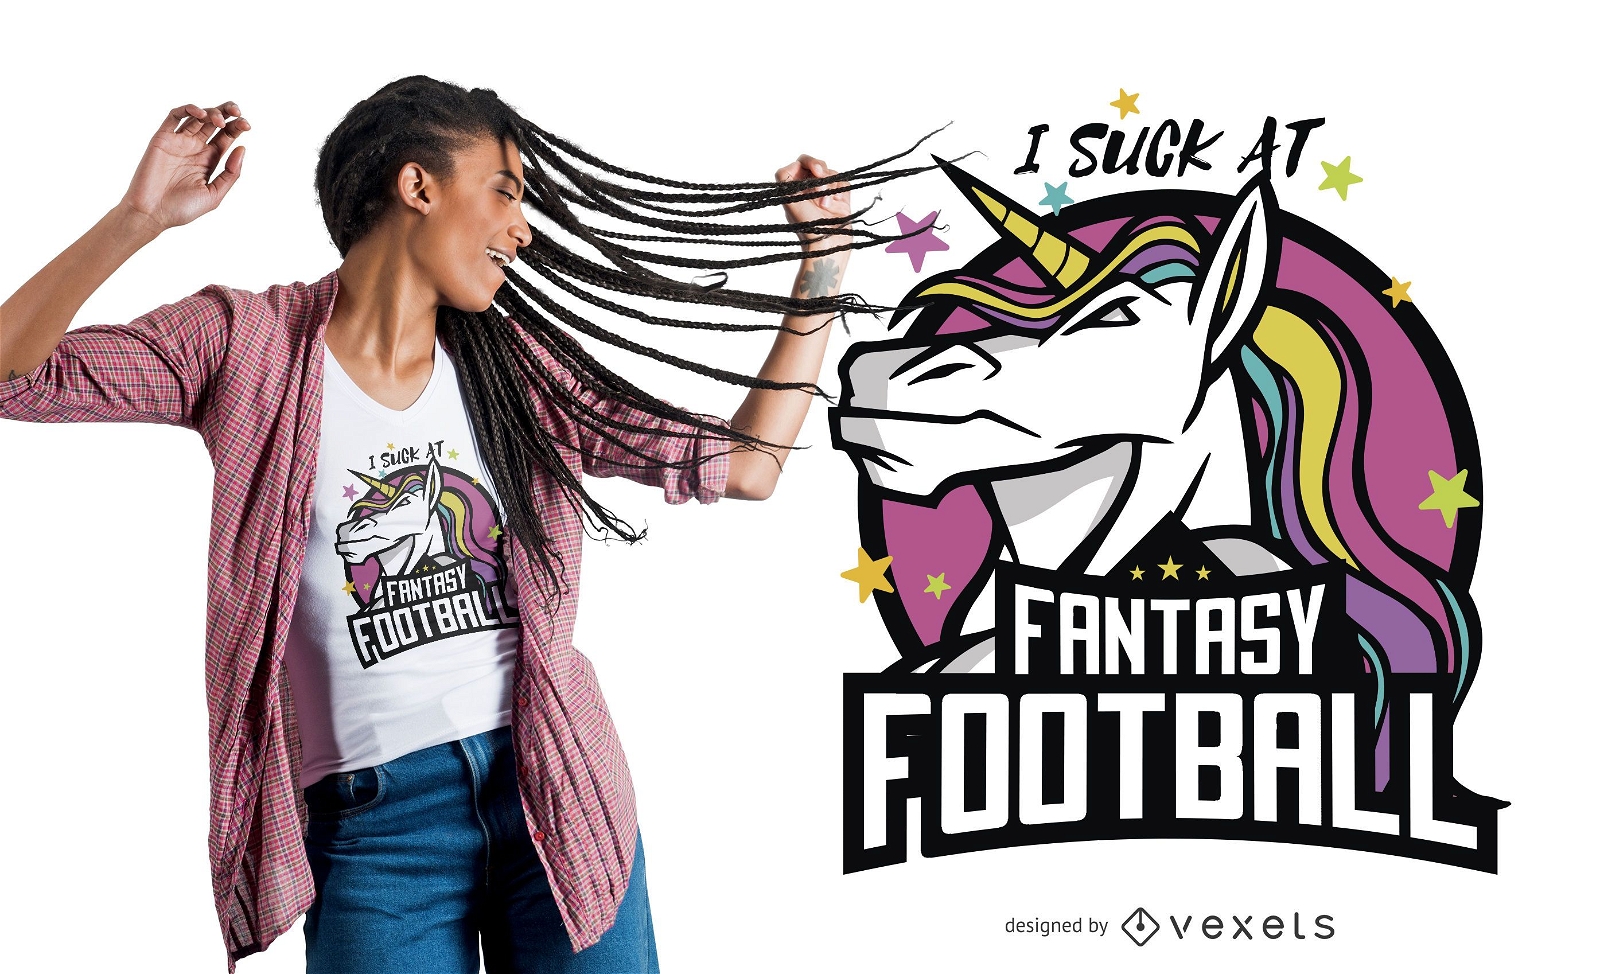 Design engra?ado da camiseta do Unicorn Fantasy Football